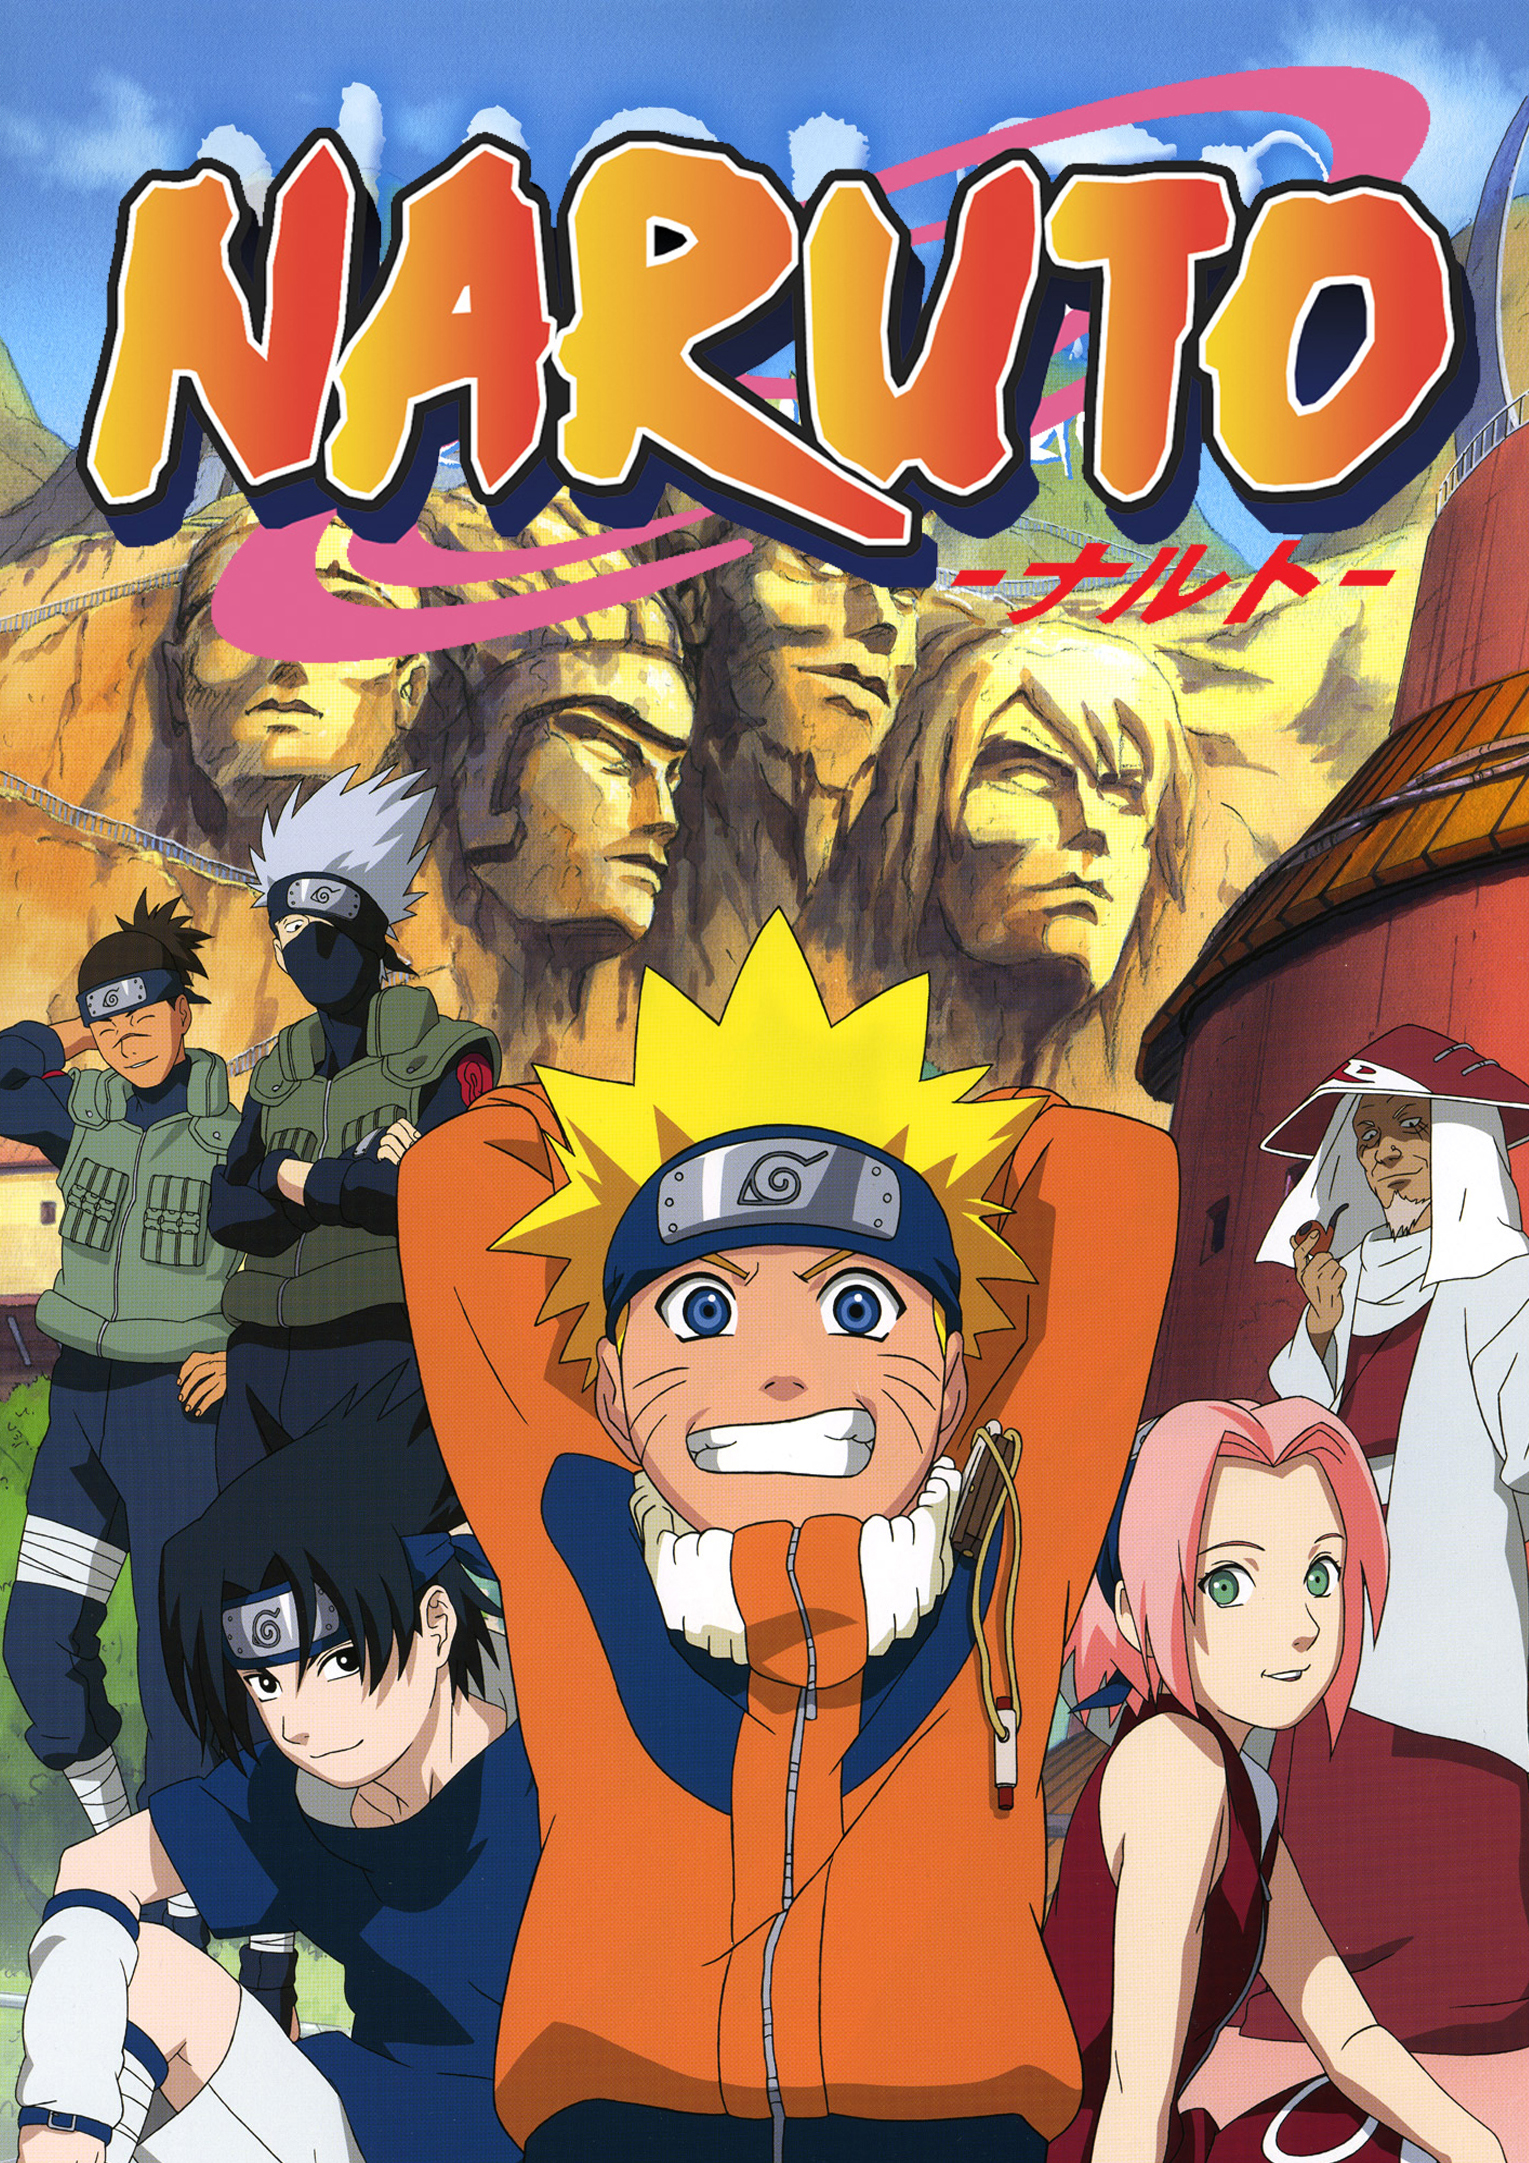 Guia para no perderte en el maravilloso mundo de Naruto!